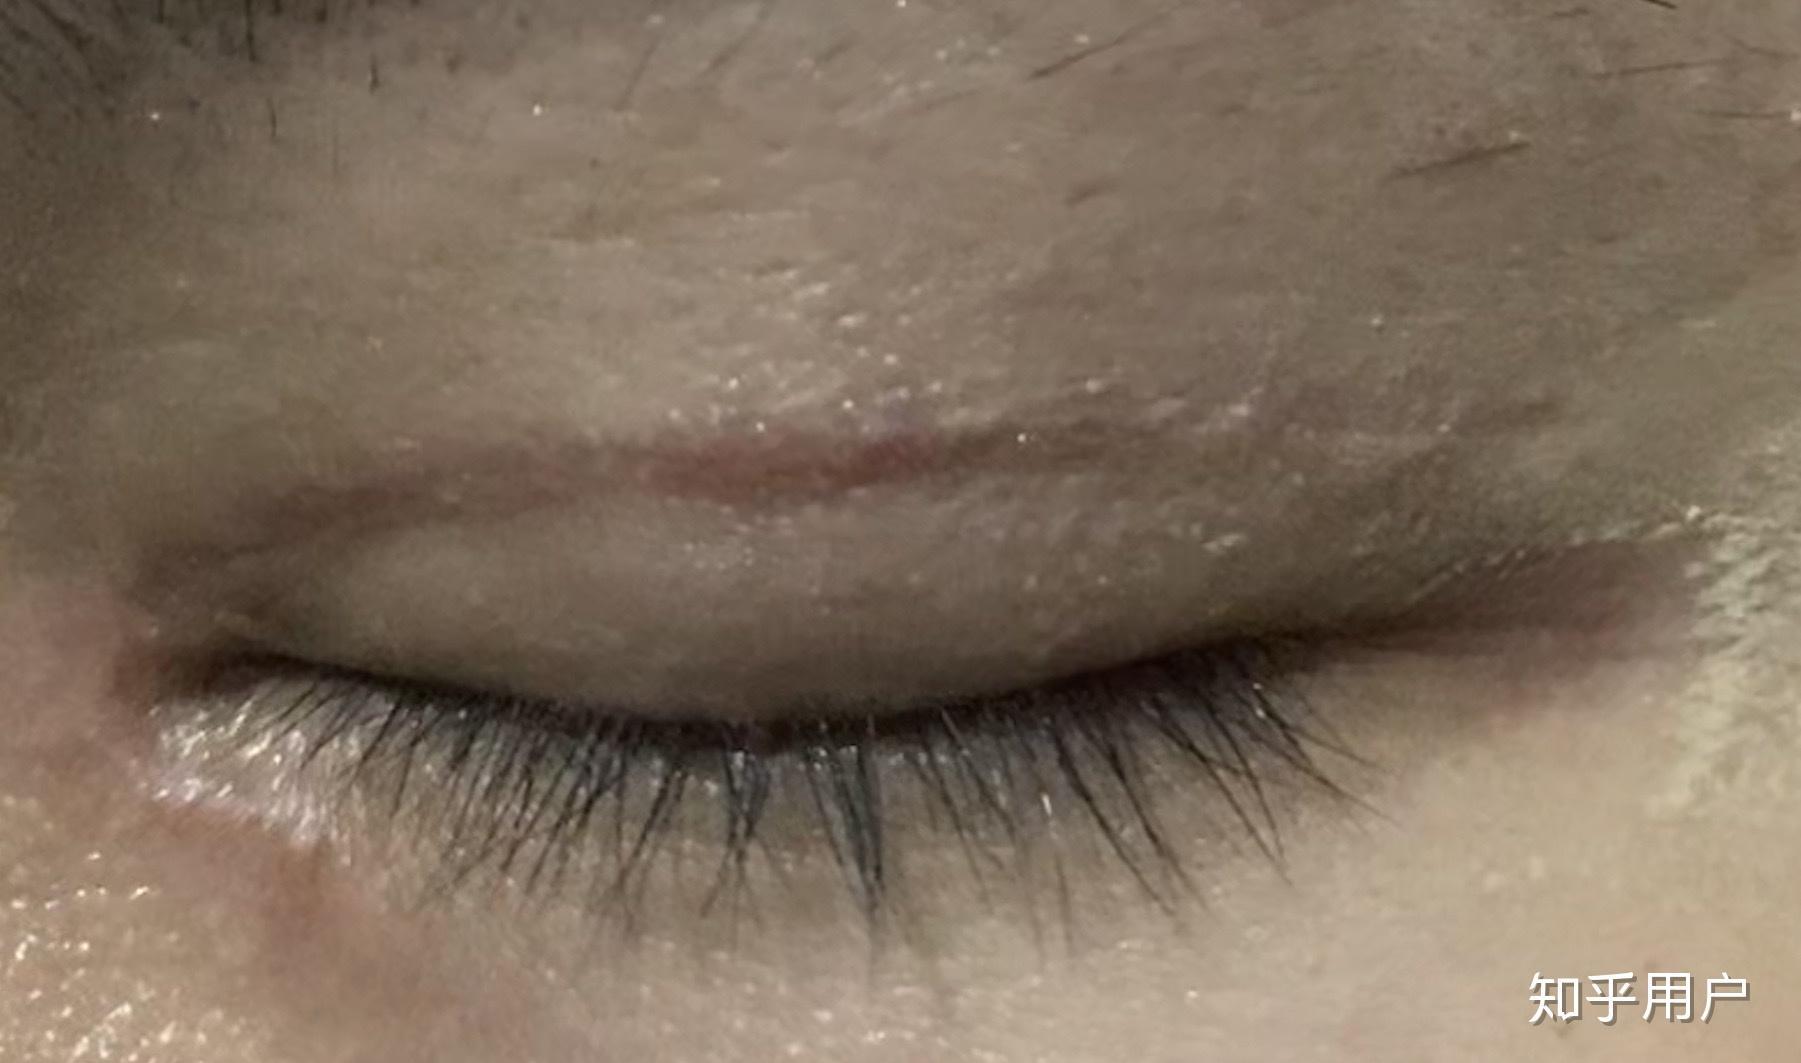 双眼皮术后疤痕增生该如何修复？